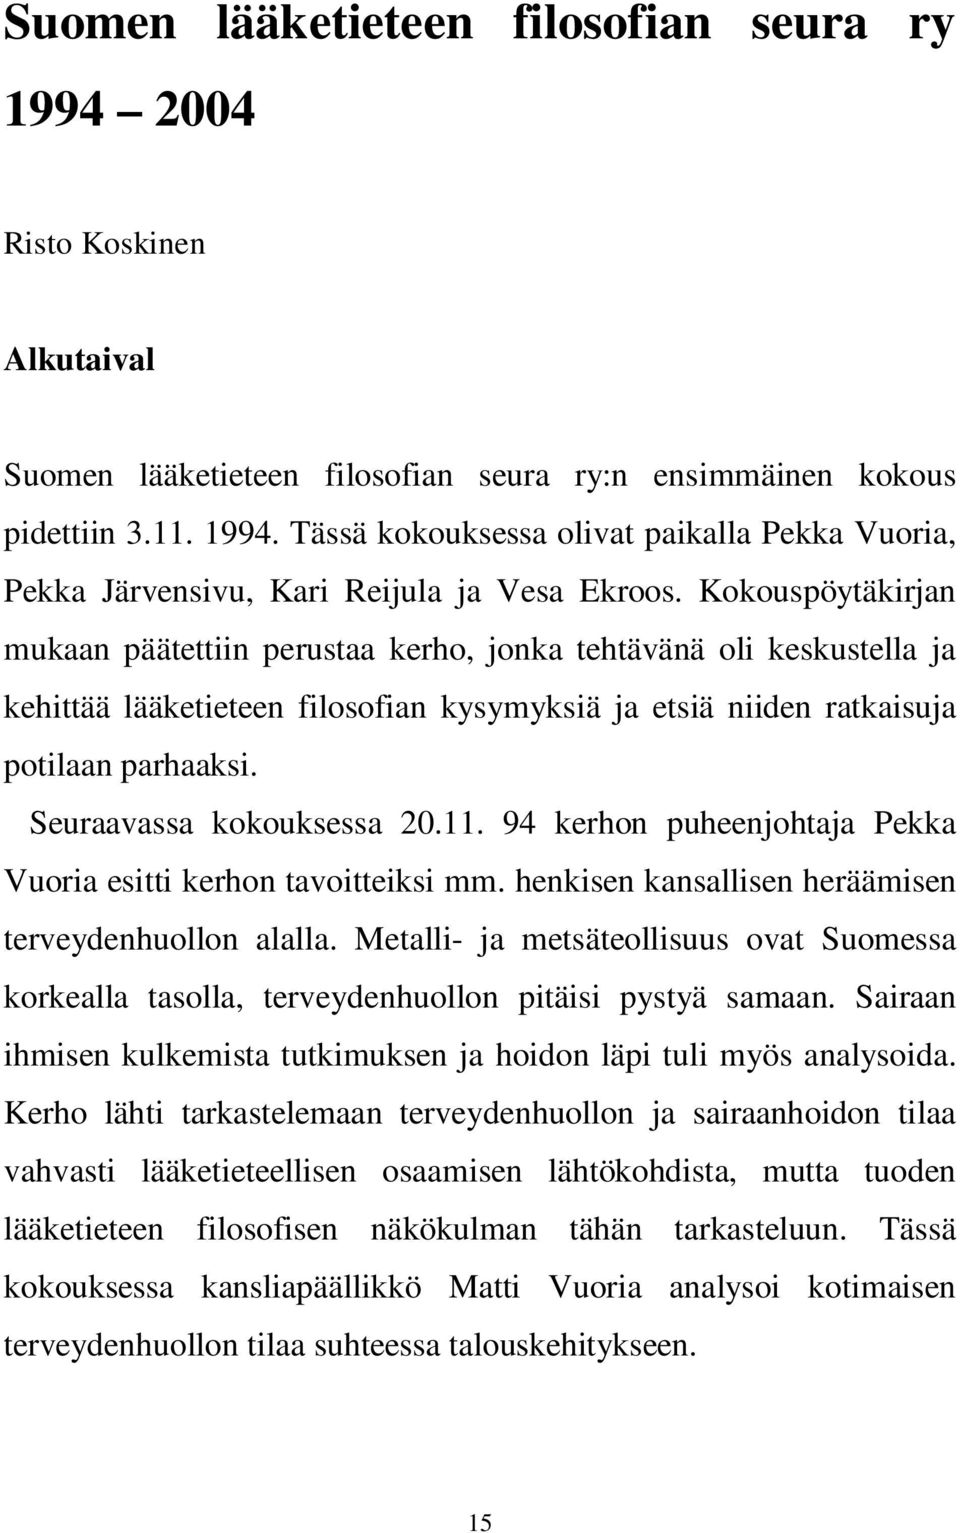 Seuraavassa kokouksessa 20.11. 94 kerhon puheenjohtaja Pekka Vuoria esitti kerhon tavoitteiksi mm. henkisen kansallisen heräämisen terveydenhuollon alalla.